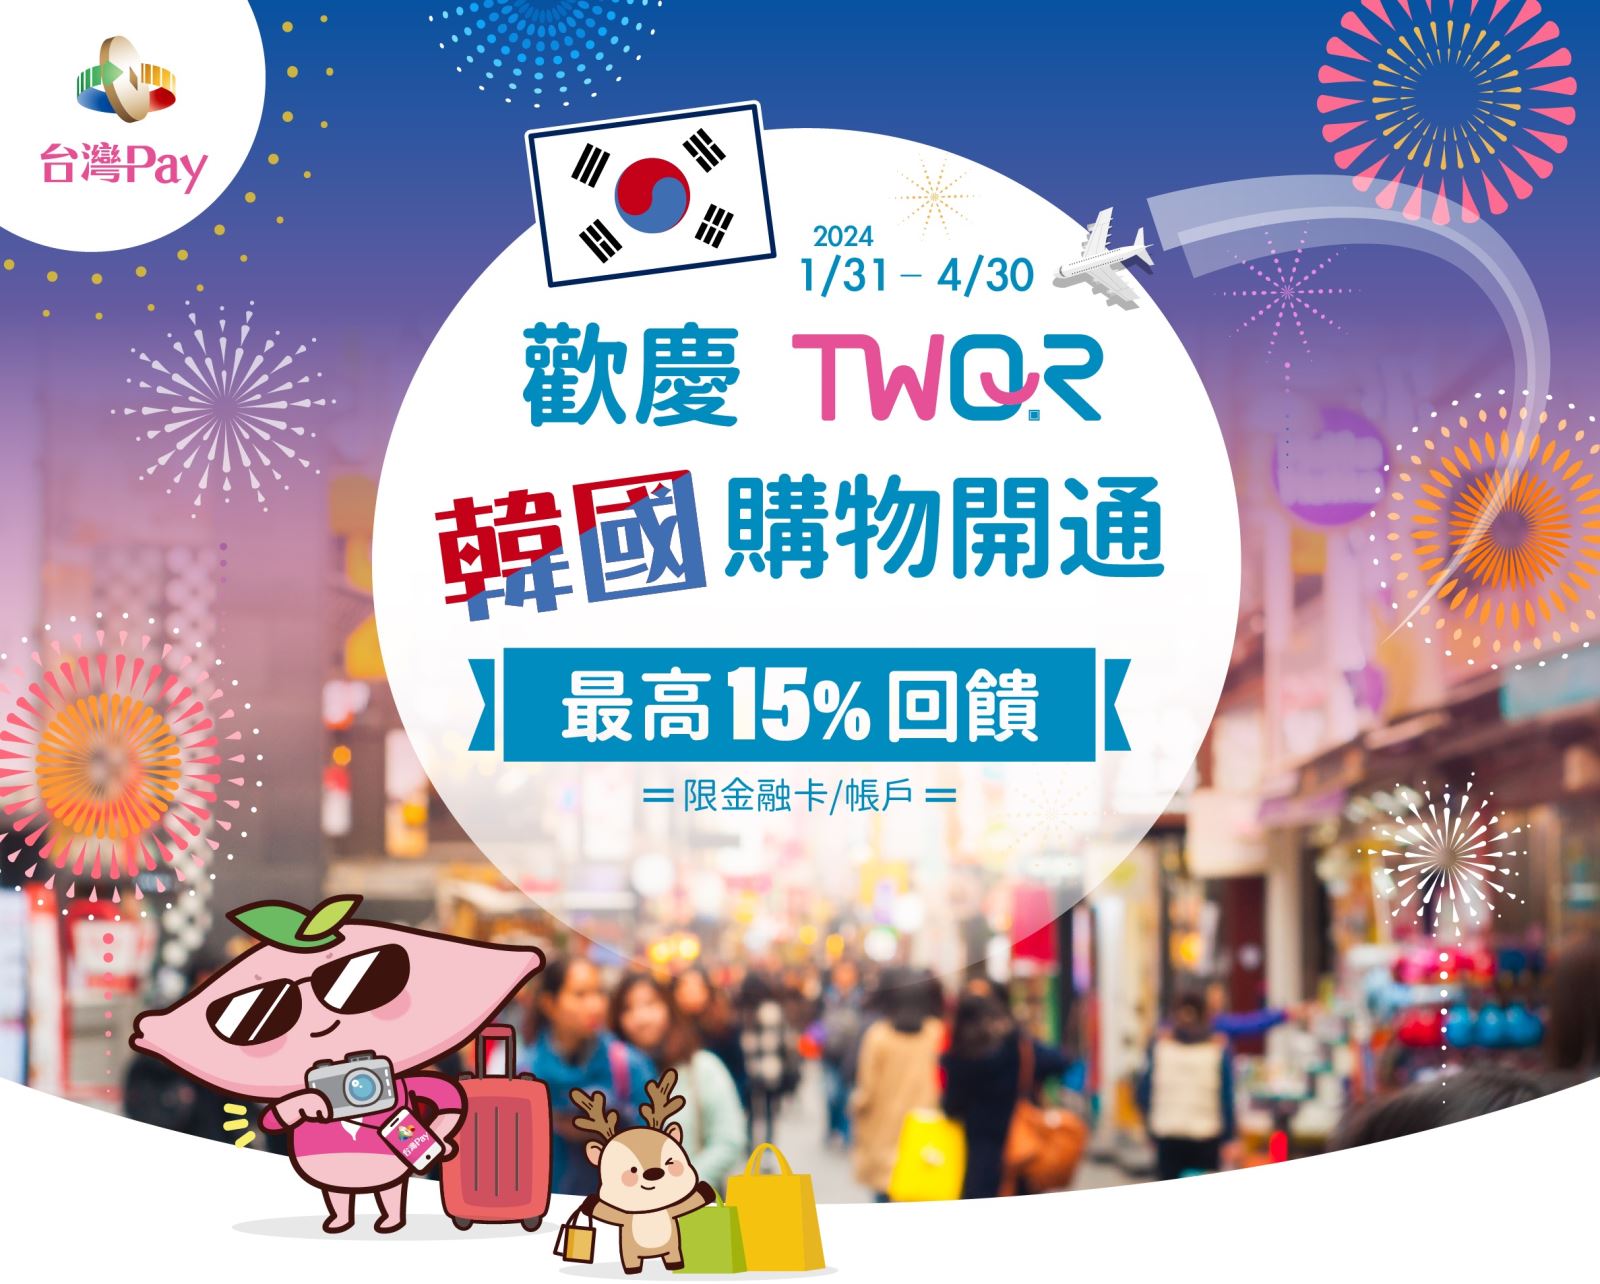 歡慶TWQR韓國購物開通 最高15%回饋